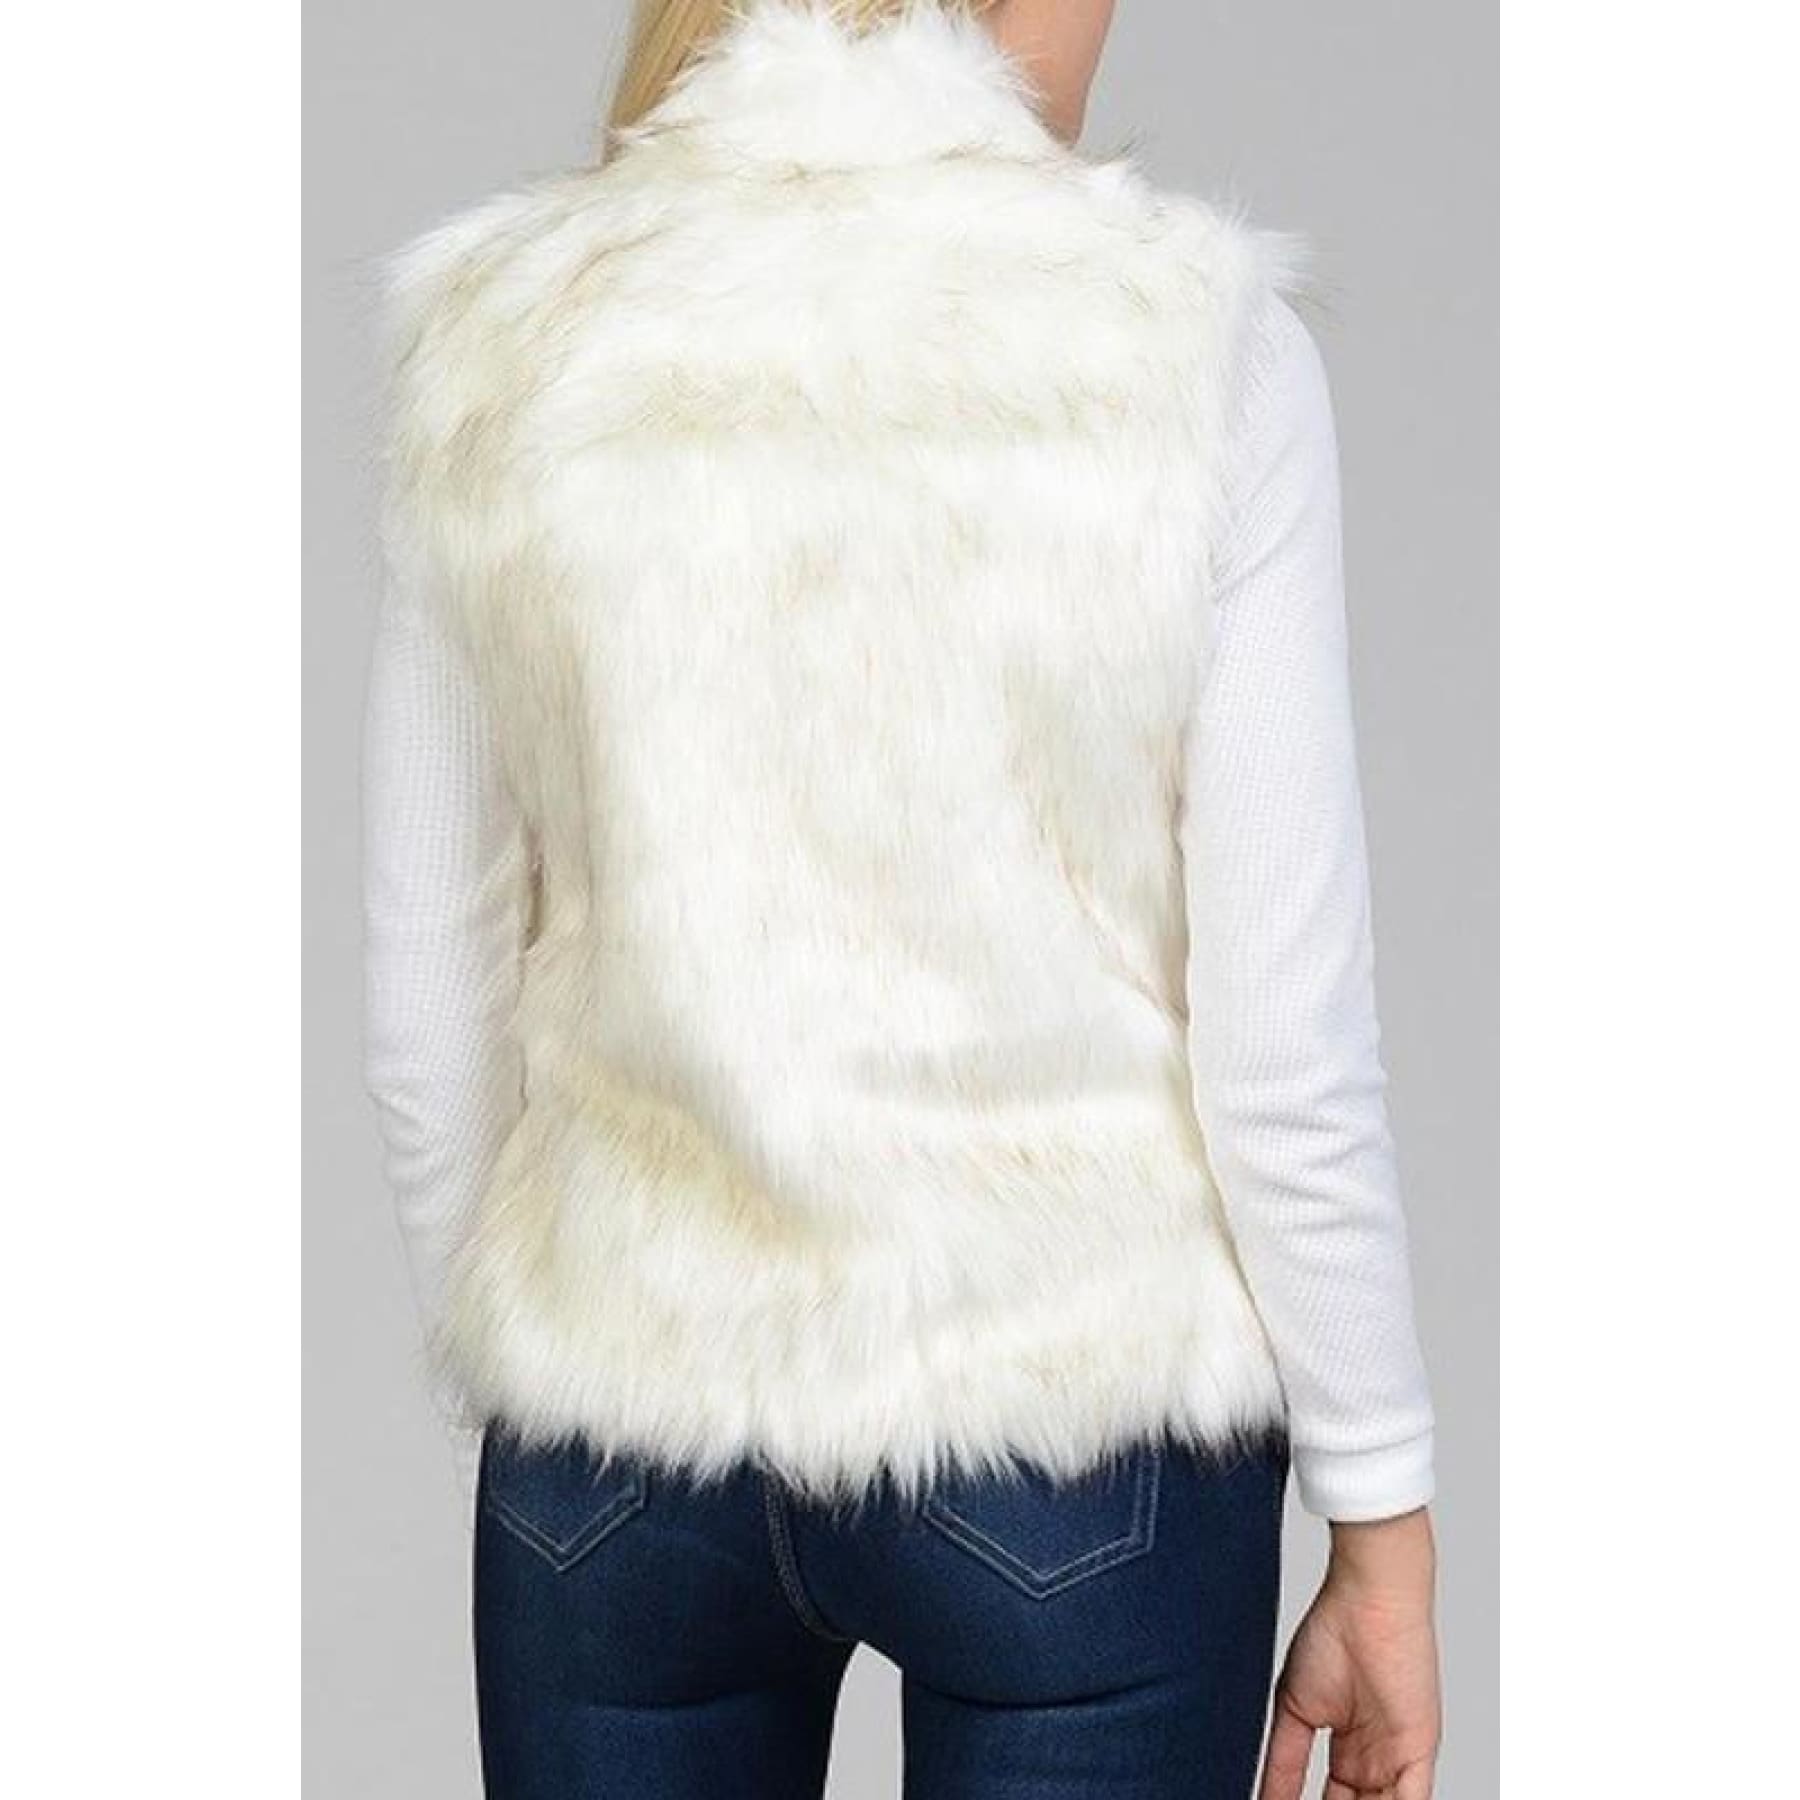 Cream Faux Fur Vest,Vest - Dirt Road Divas Boutique